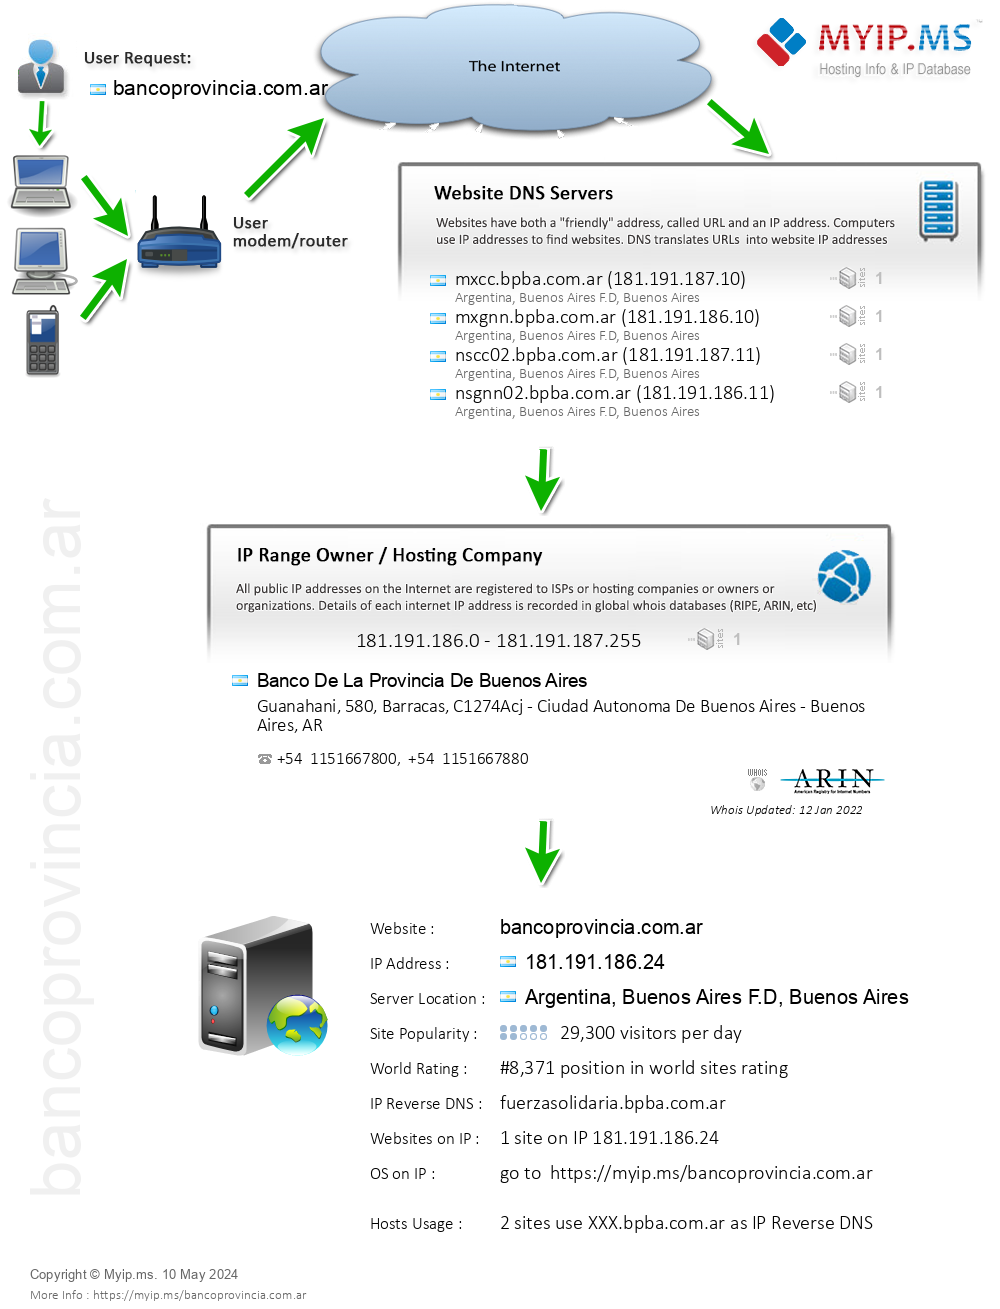 Bancoprovincia.com.ar - Website Hosting Visual IP Diagram